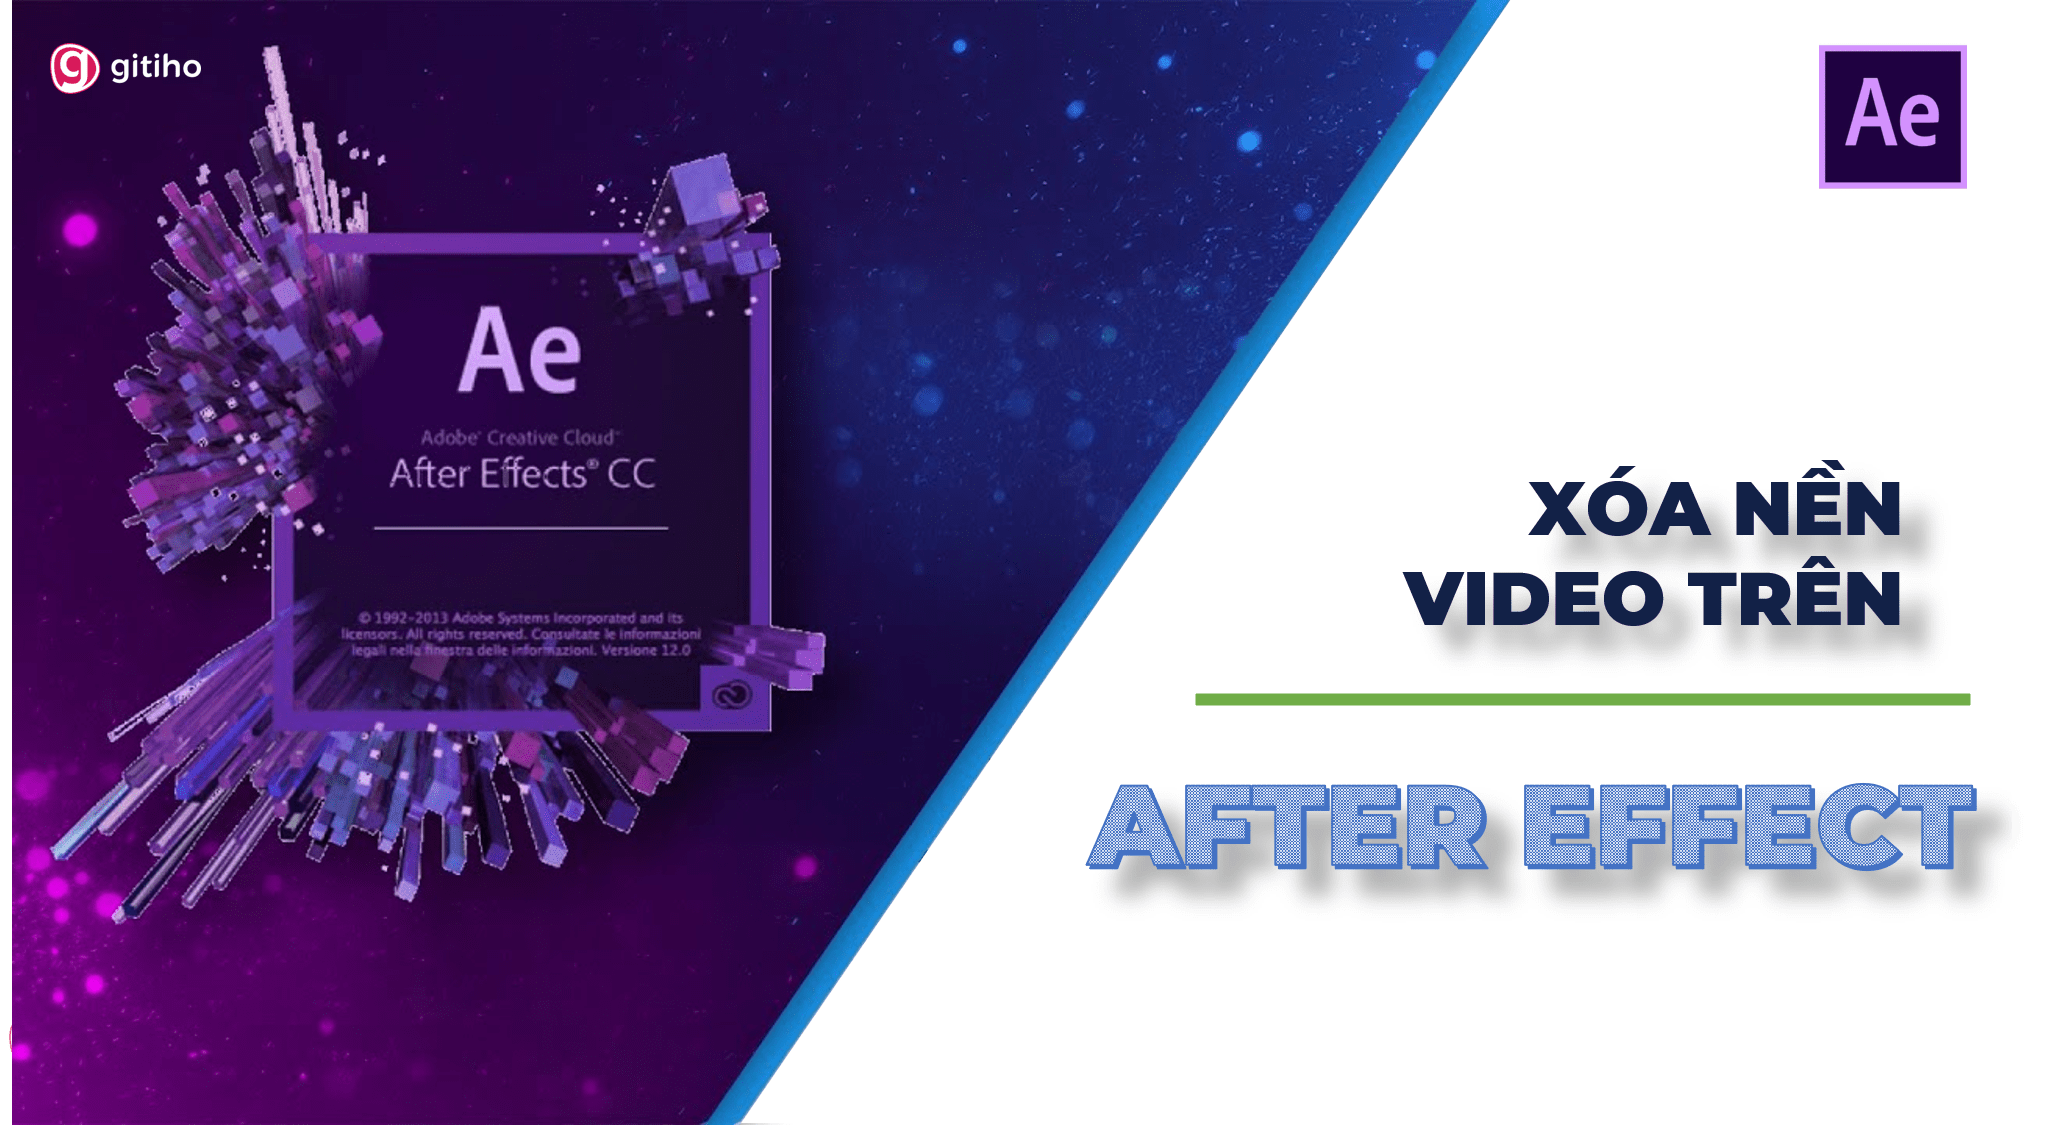 Xóa nền video trong After Effects: Với sự phát triển của công nghệ, việc xóa bỏ nền video đã trở nên đơn giản hơn bao giờ hết. Sử dụng các công cụ chuyên dụng trong After Effects, bạn có thể dễ dàng xóa bỏ nền video và thay thế nó bằng một nền mới một cách dễ dàng và chính xác. Hãy cùng khám phá các kỹ thuật mới nhất để tạo ra những video đẹp và ấn tượng.